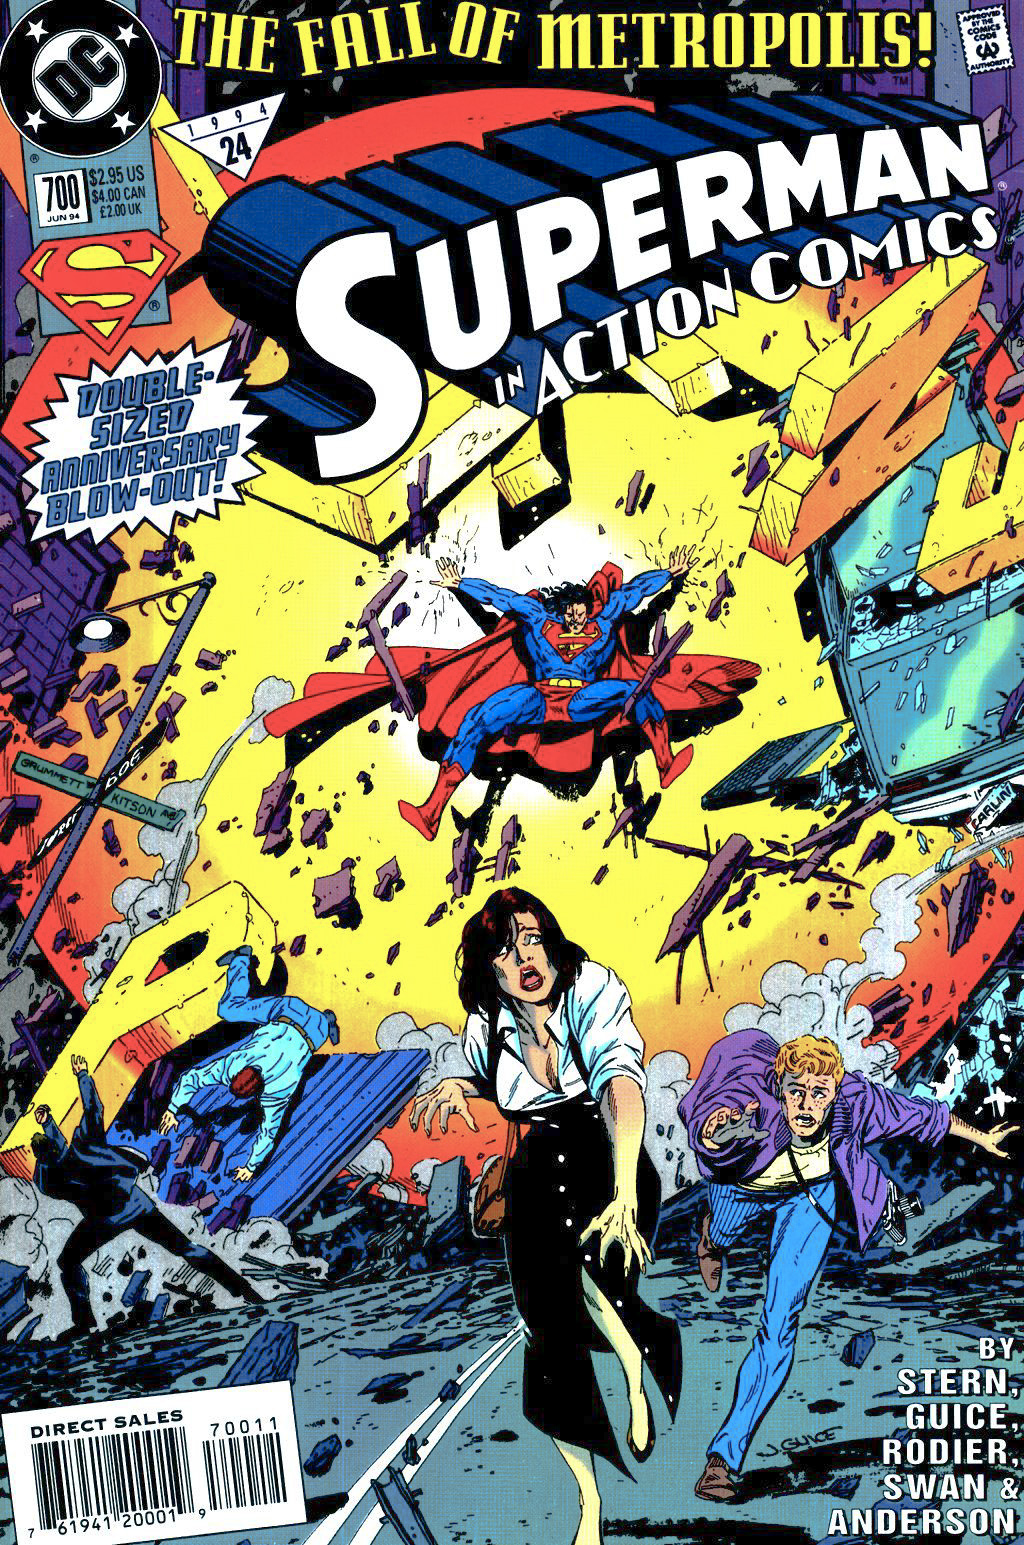 Action Comics Vol. 1 #700A